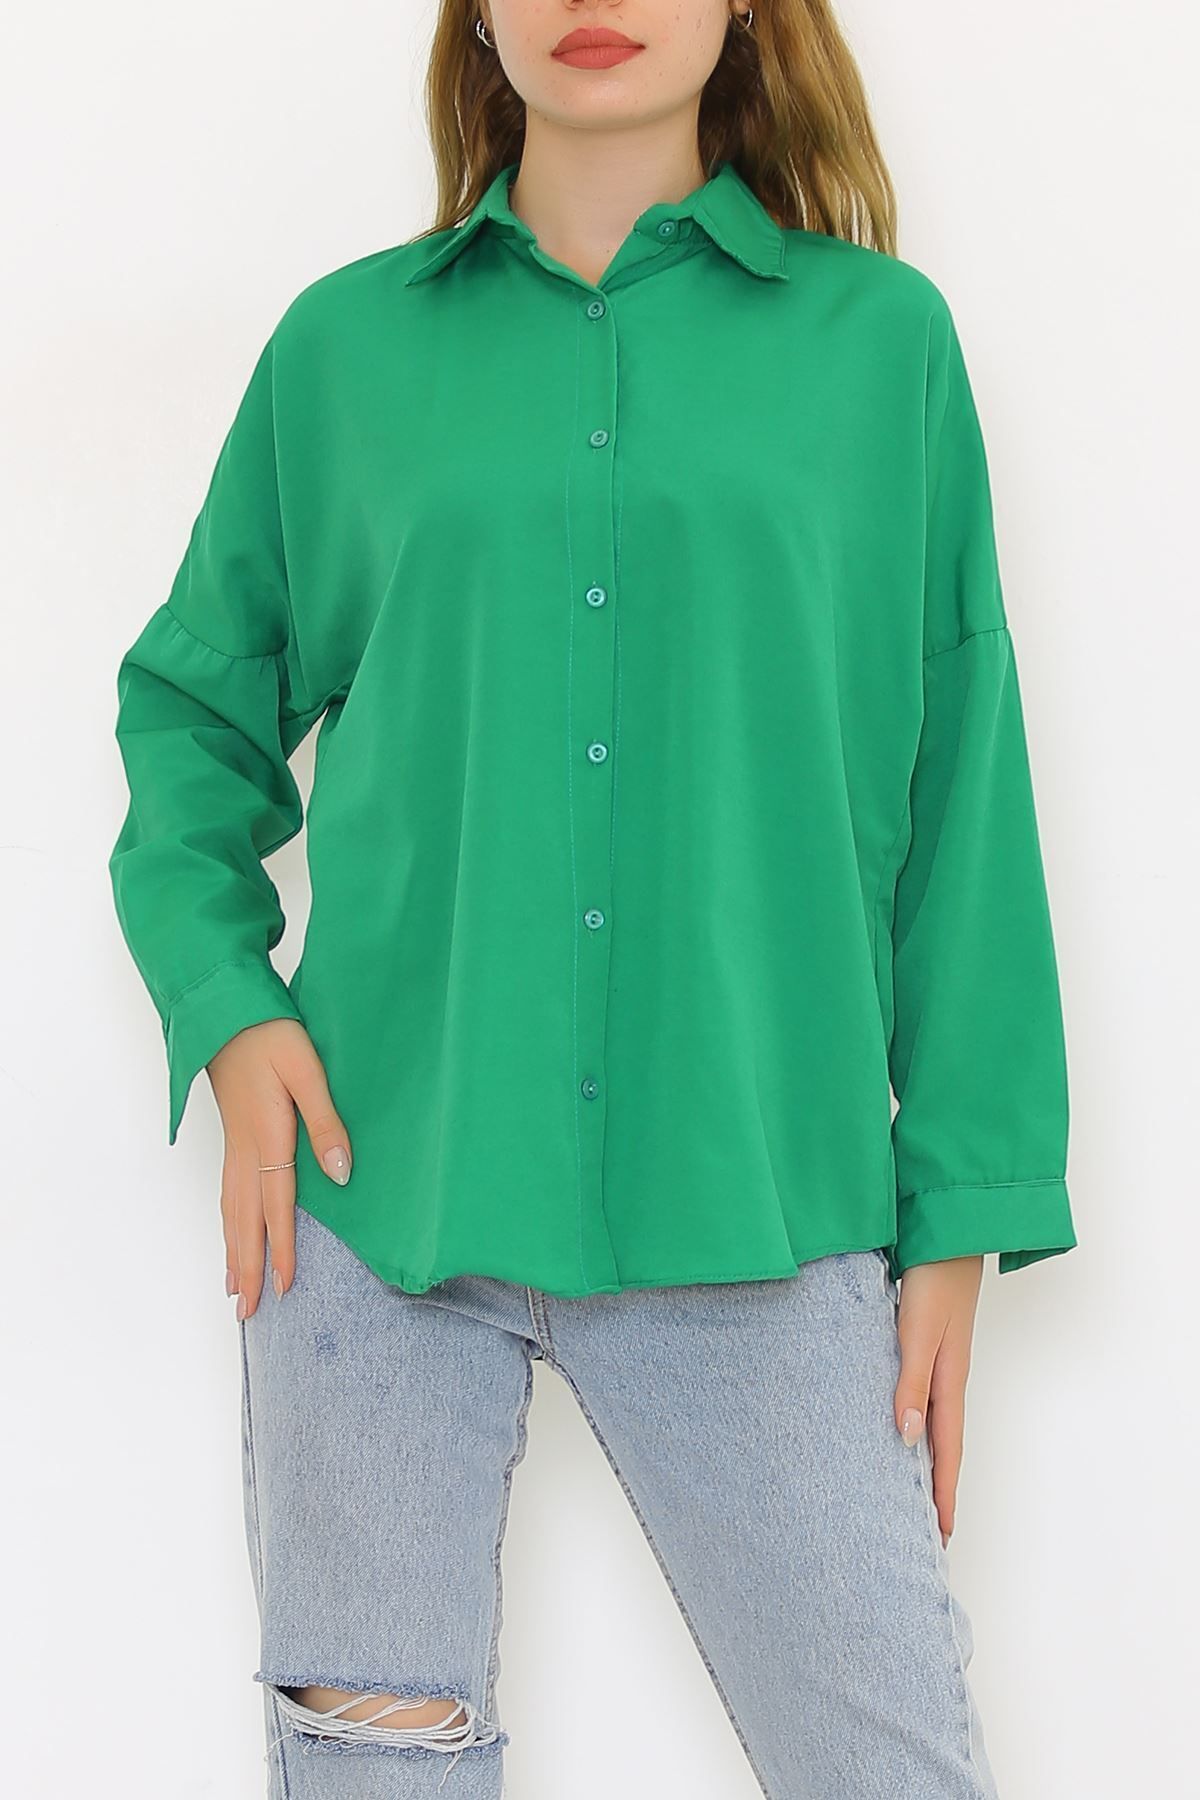 AKSU Salaş Gömlek Yeşil1 - 293.1247.